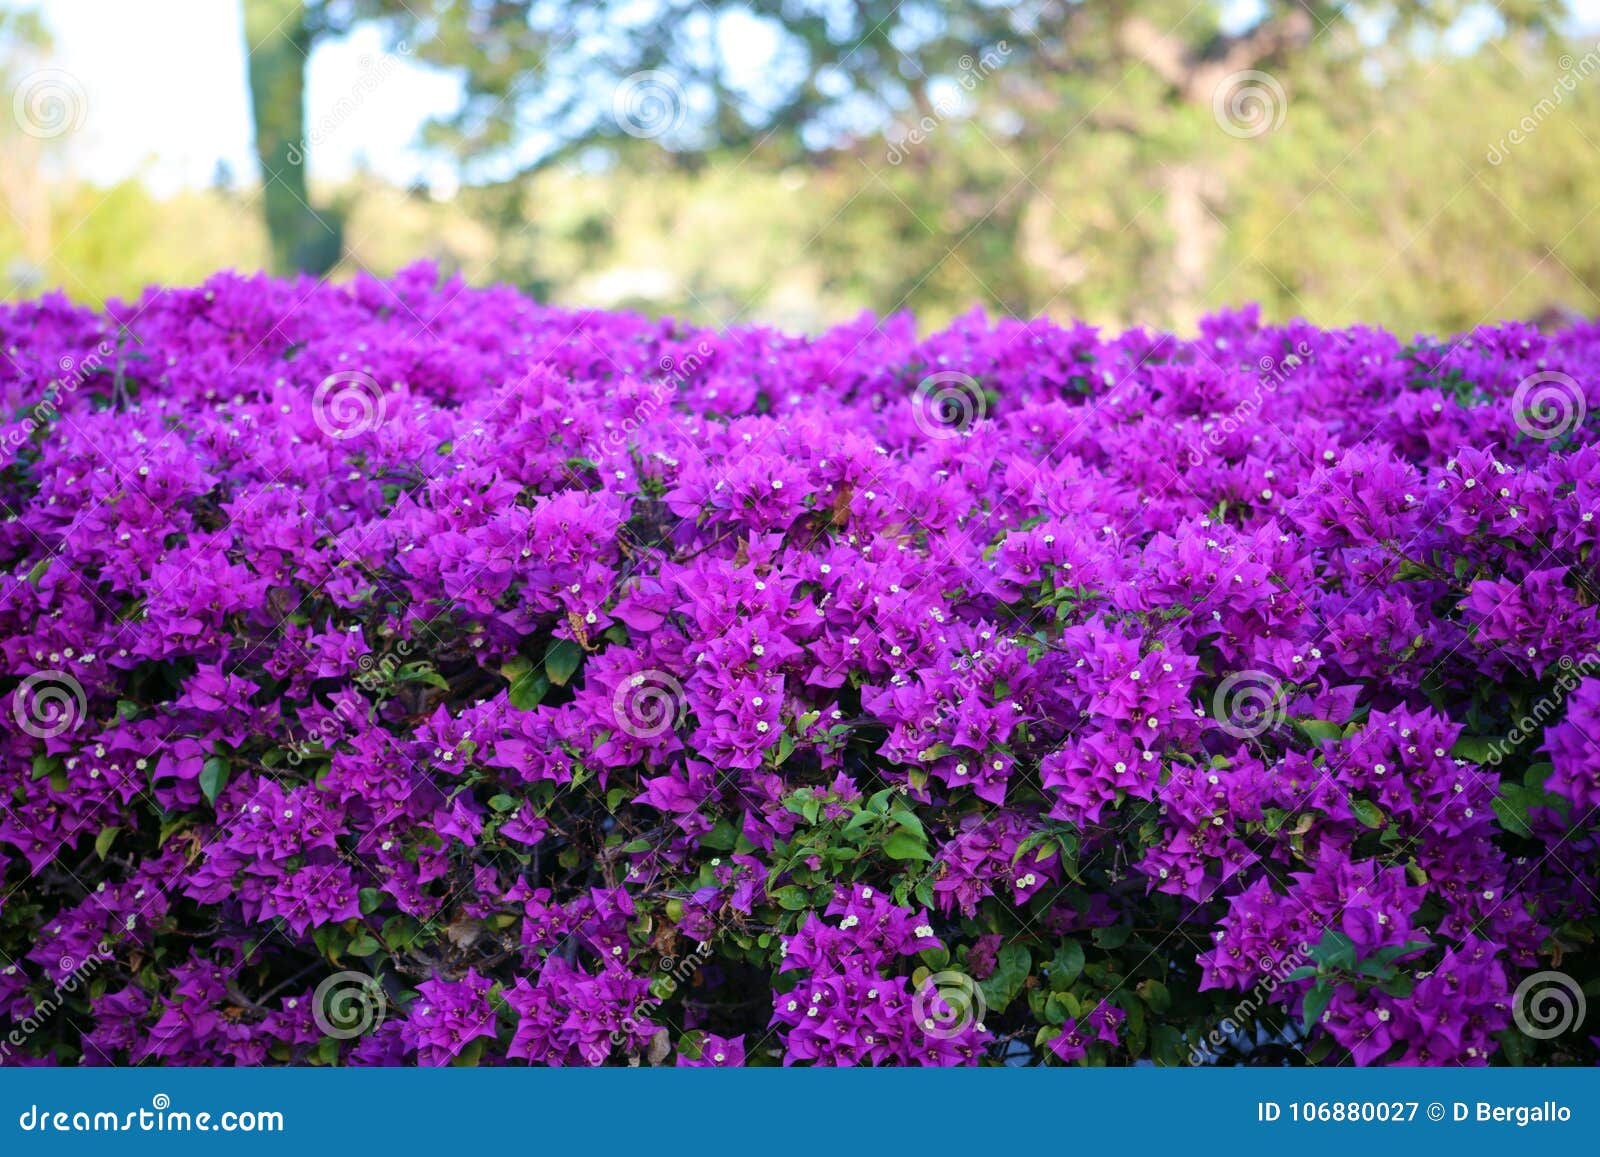 purple flowers violet flores purpura violetas 50 megapixels picture